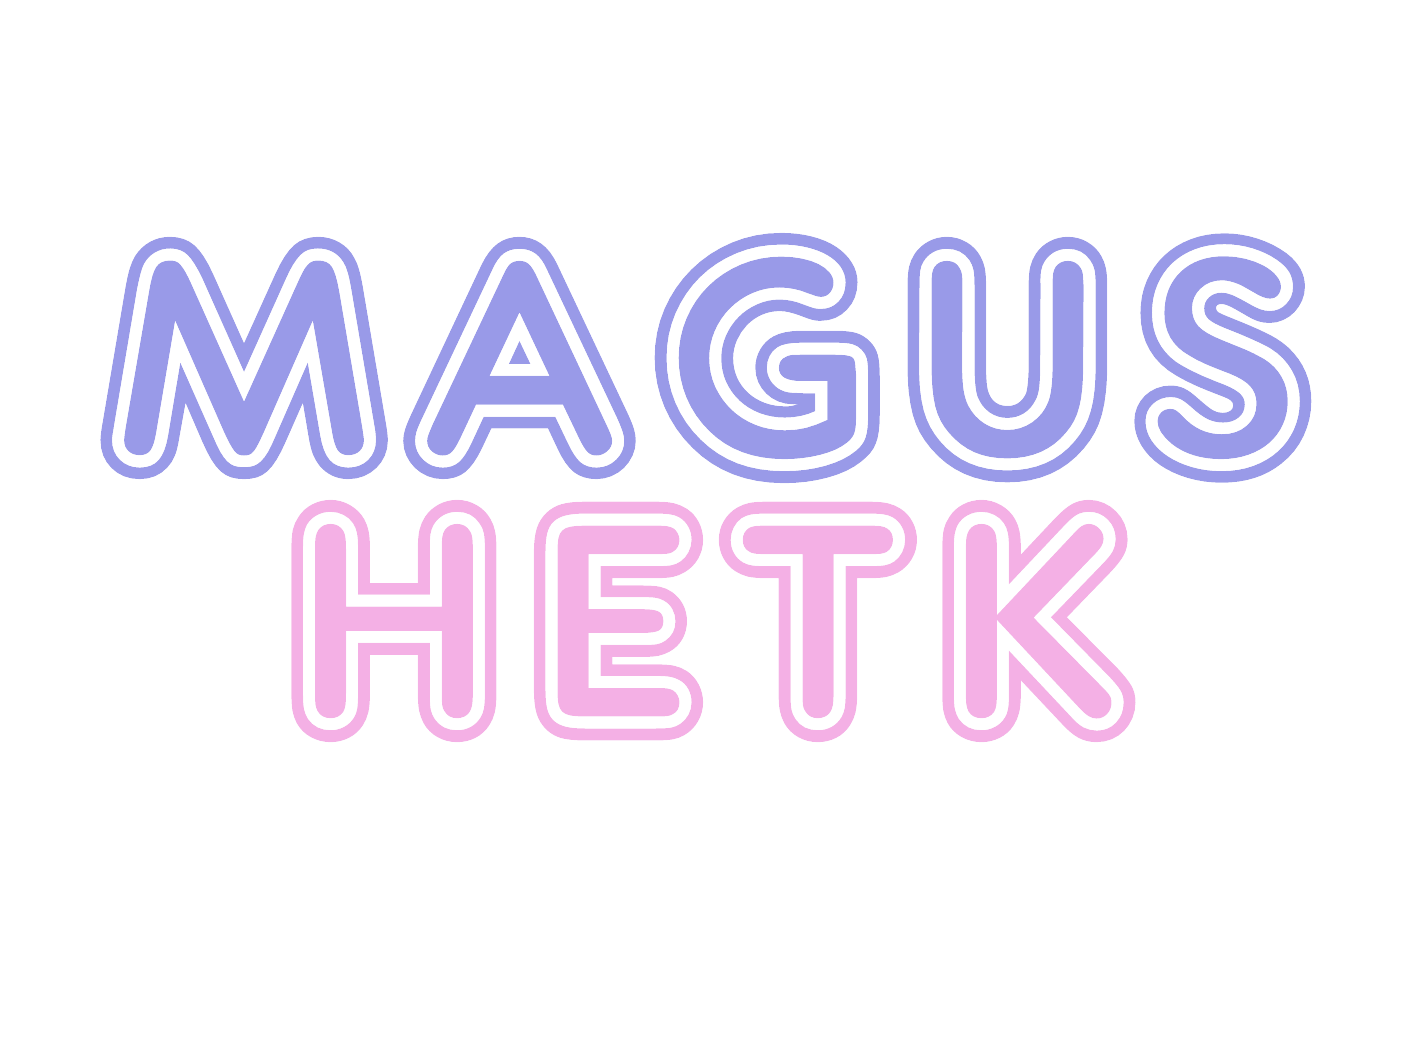 Magus Hetk